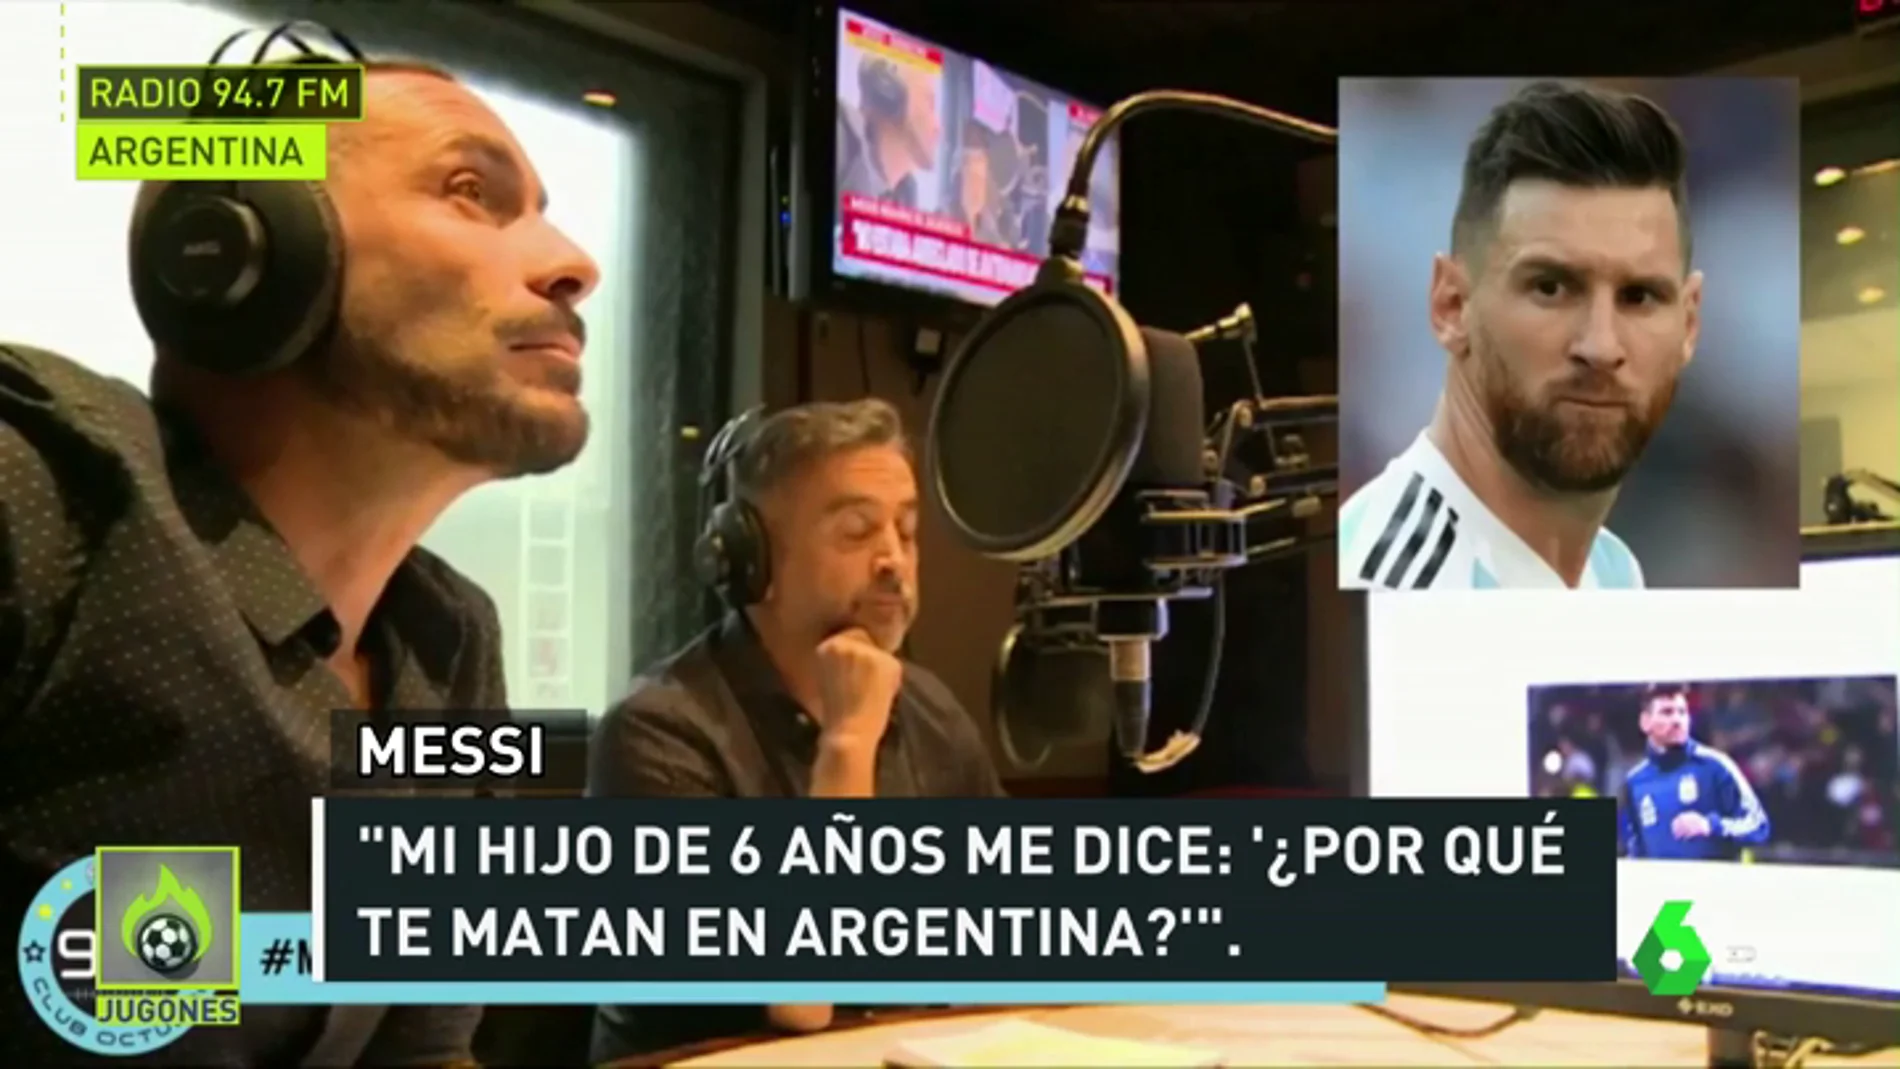 Messi: "Mi hijo me pregunta, ¿por qué te matan en Argentina, papi?"